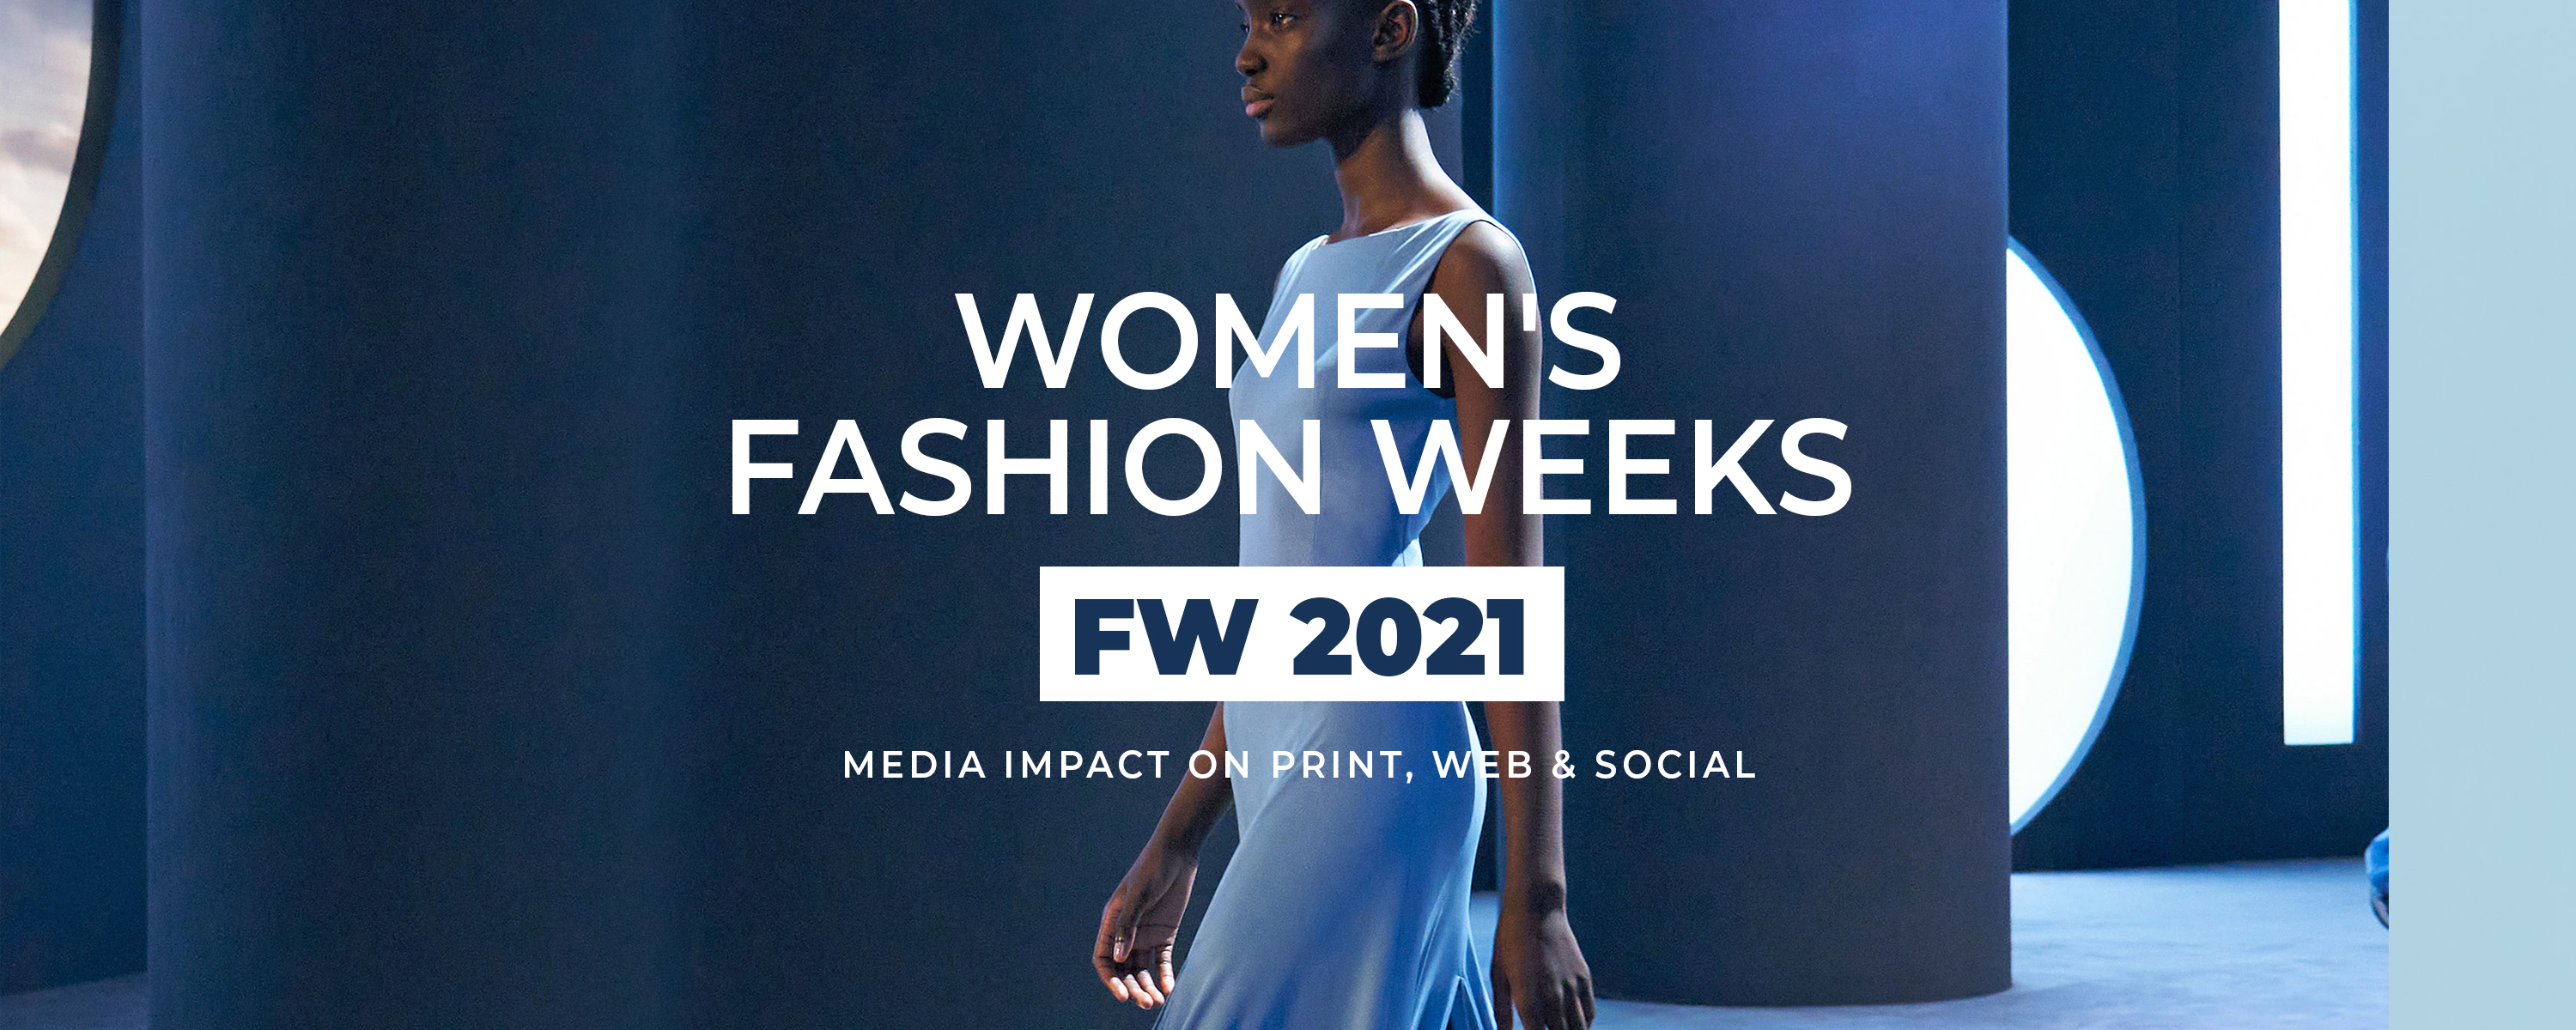 FW21 Fashion Week